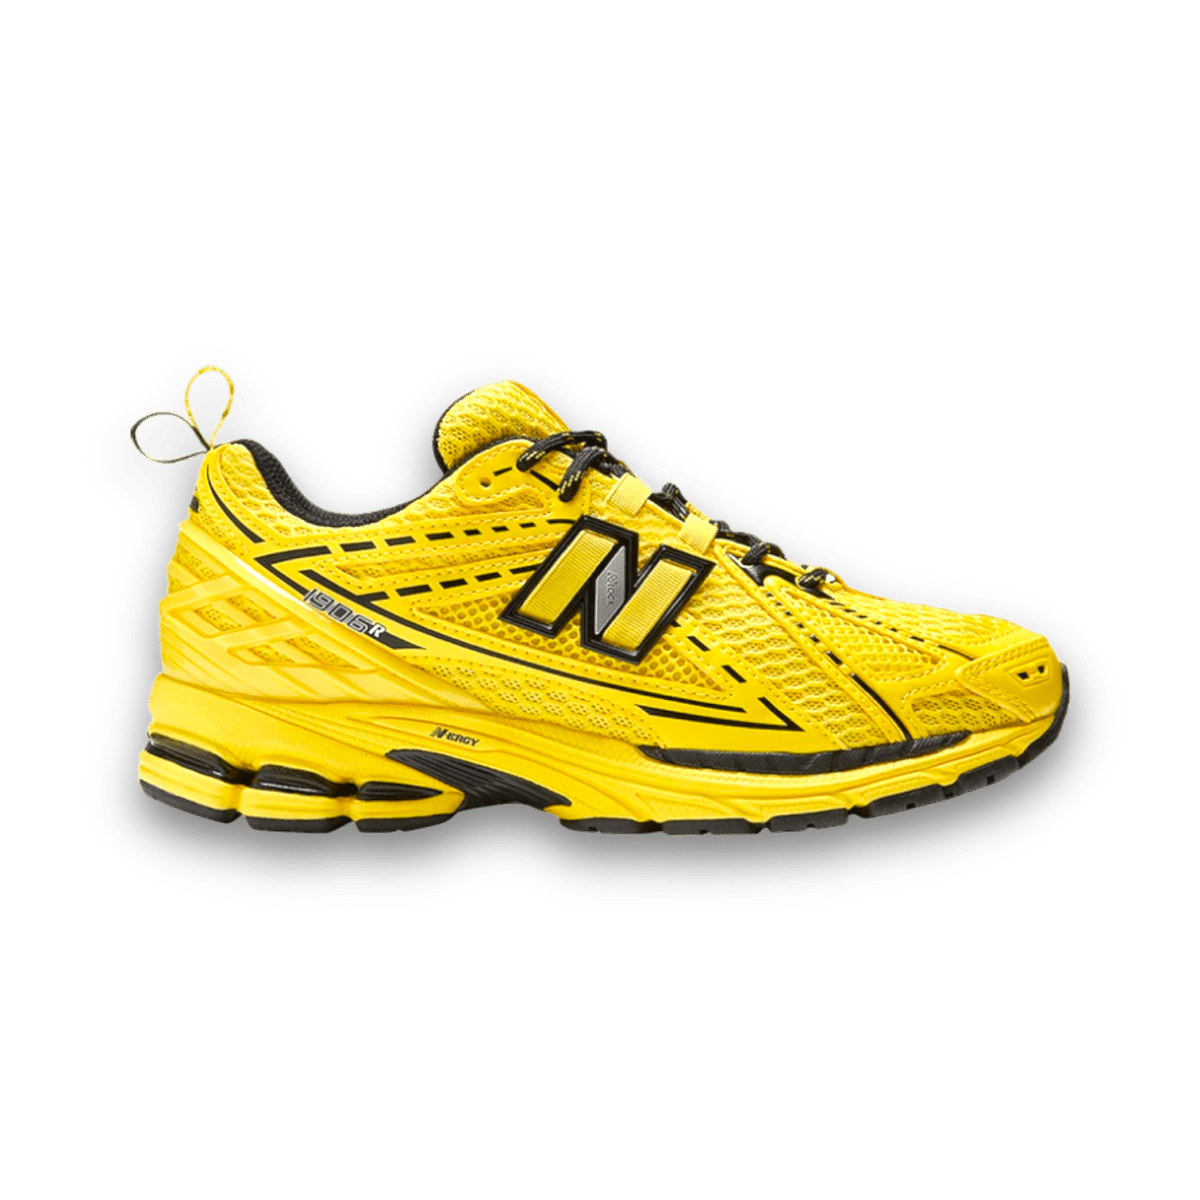 New Balance GANNI x 1906R 'Blazing Yellow' - Grade School - Low Sneaker - Jawns on Fire Sneakers & Streetwear